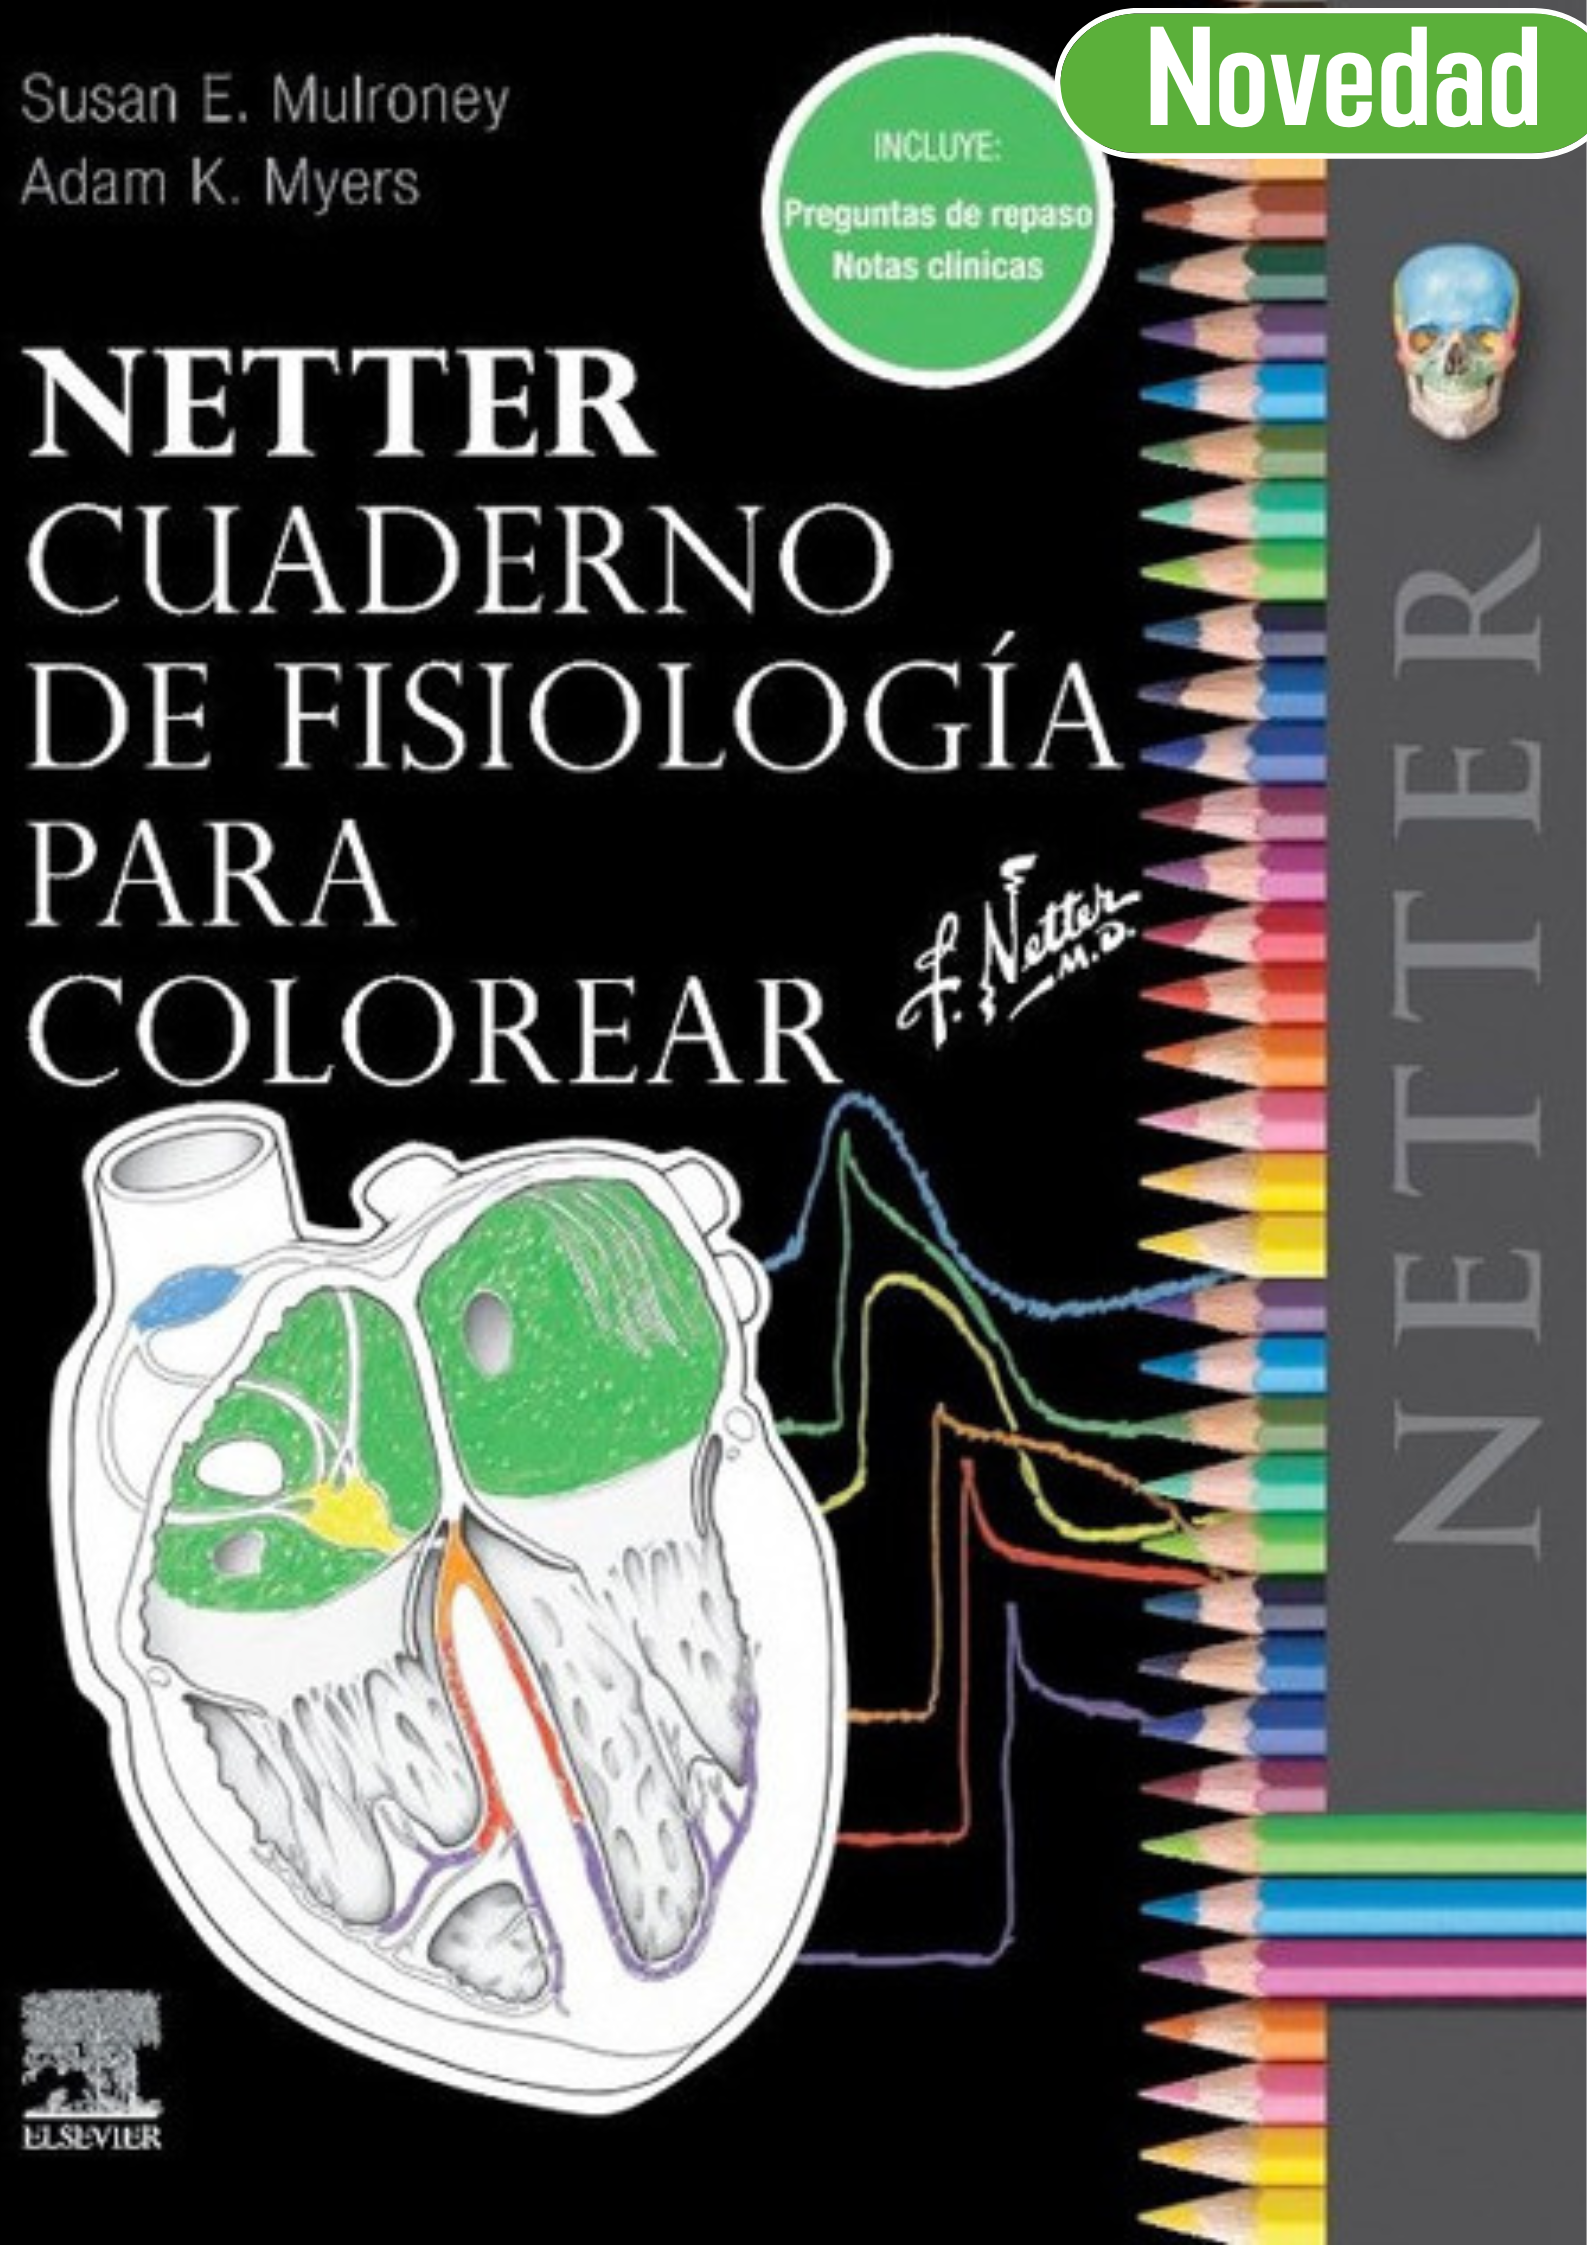 Netter Cuaderno de Fisiología para colorear (Incluye preguntas de repaso y notas clínicas)